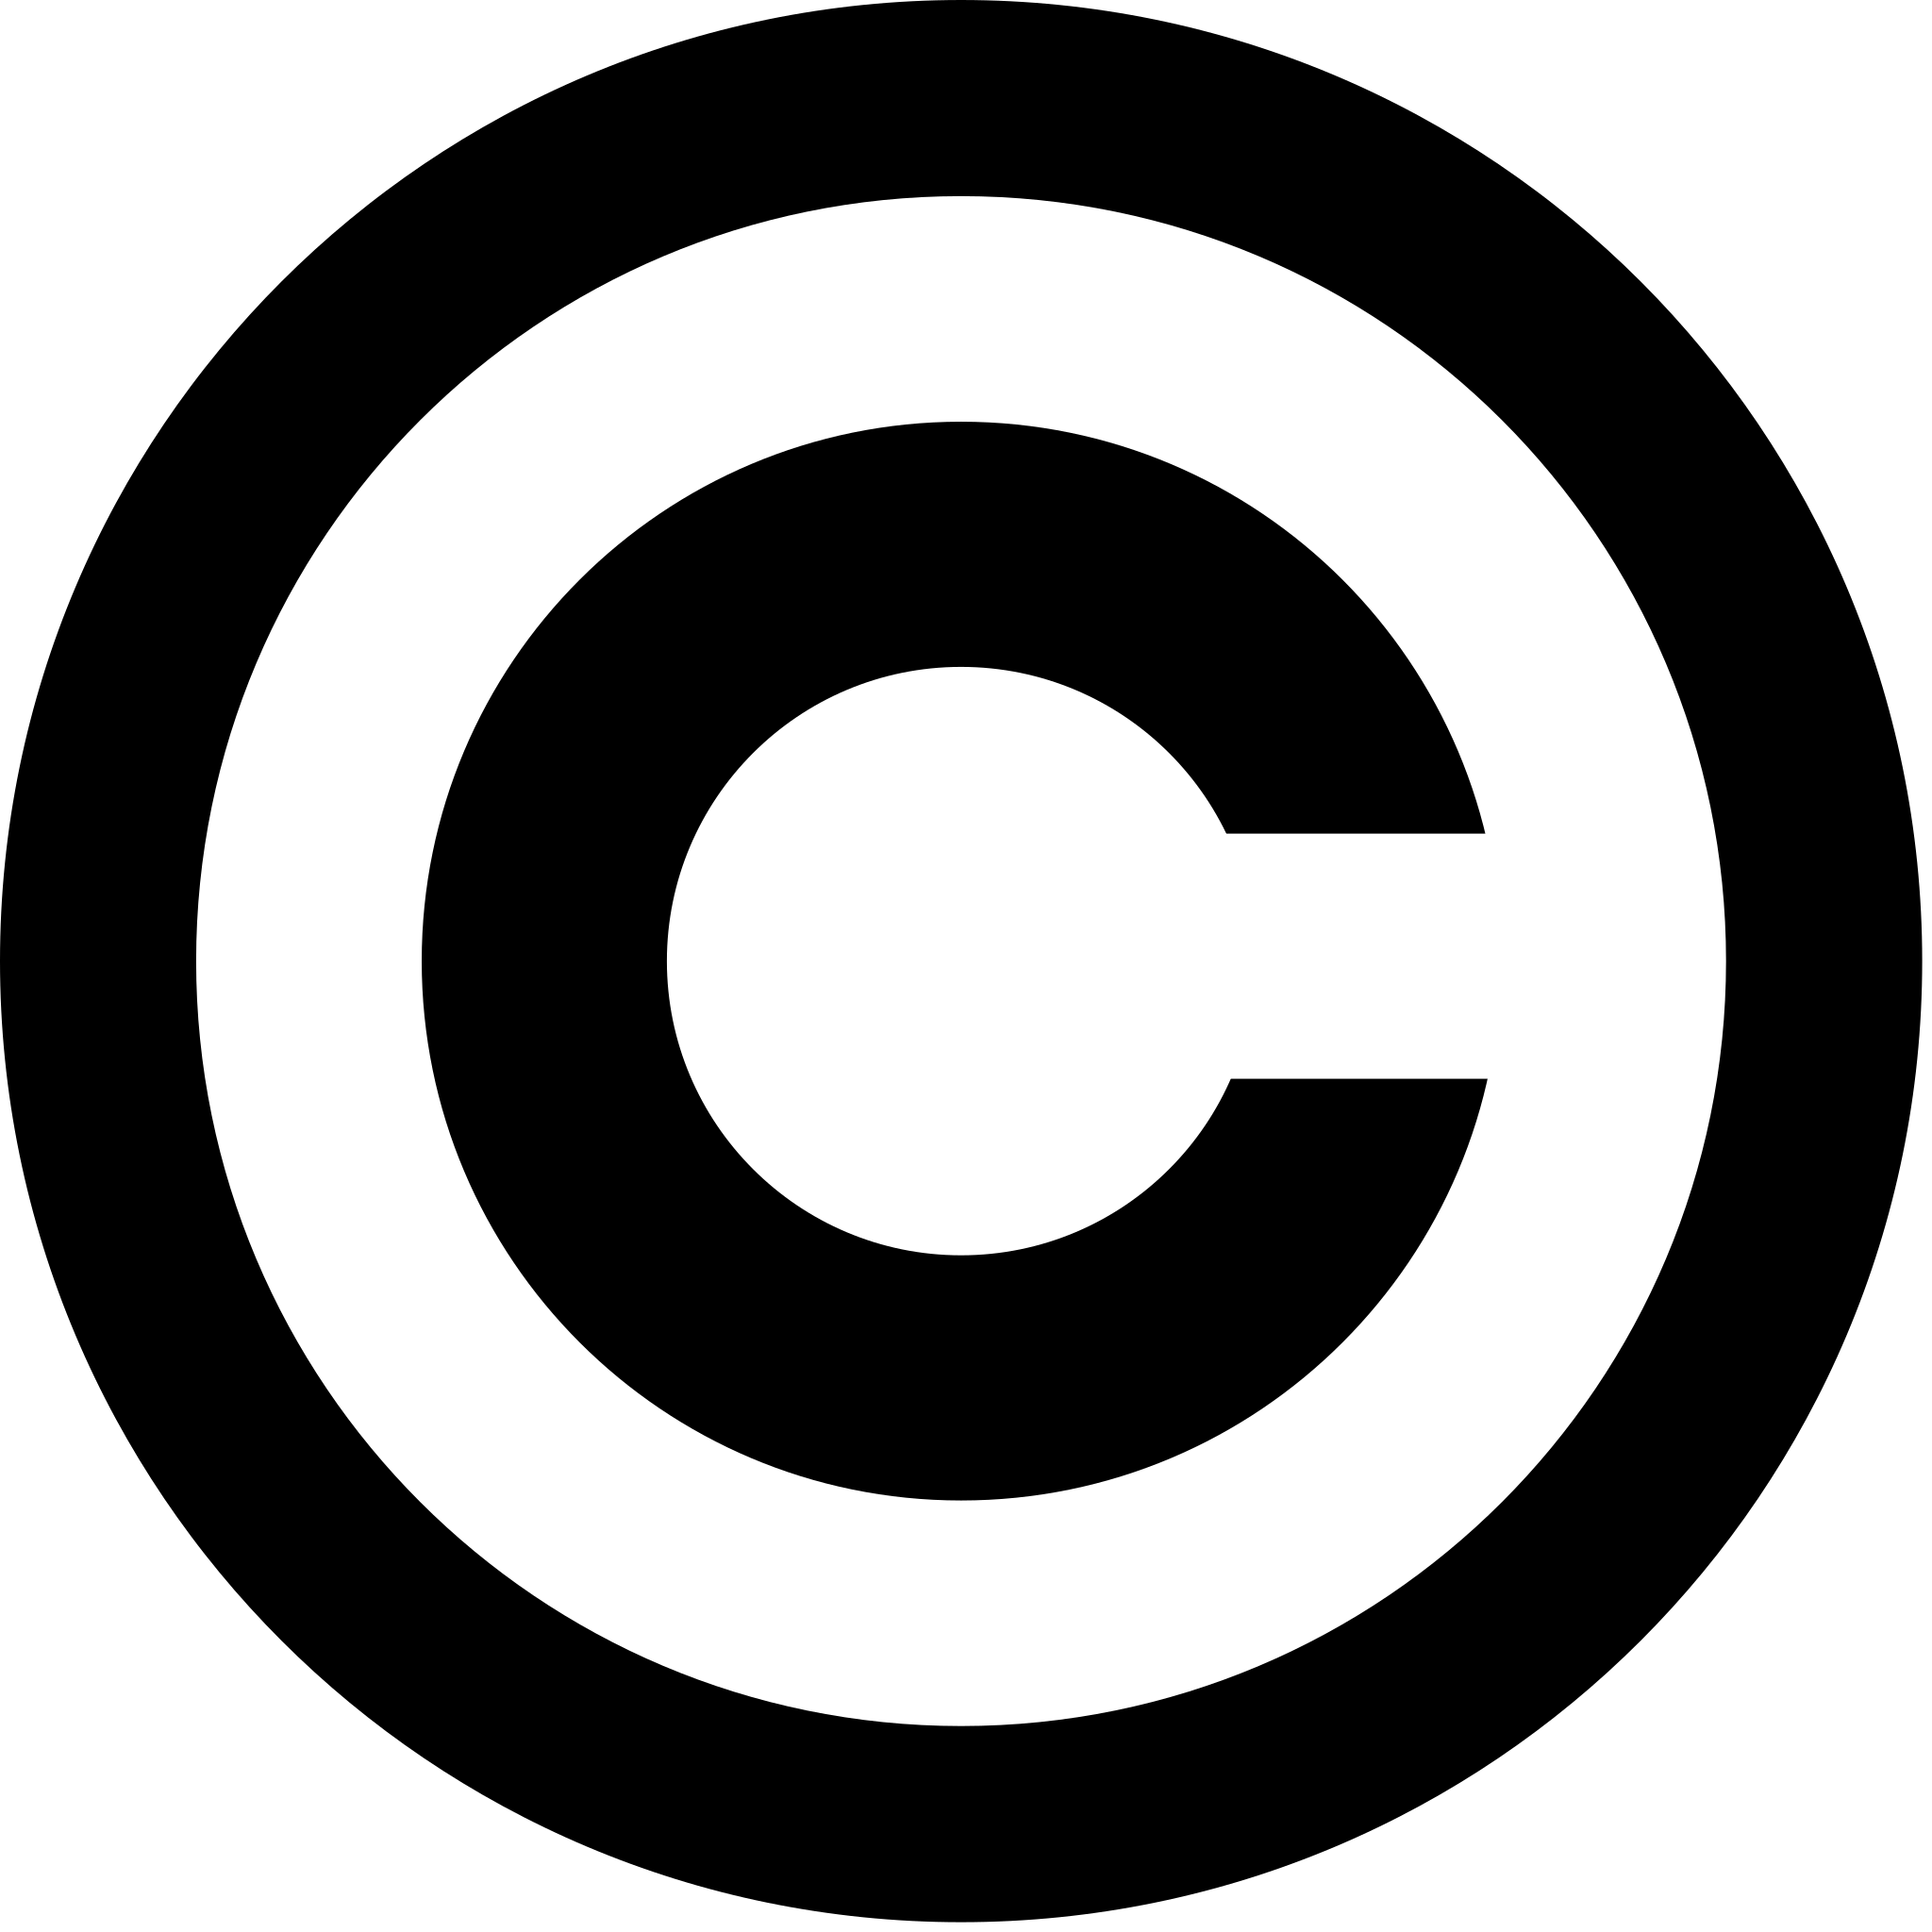 c symbol logo